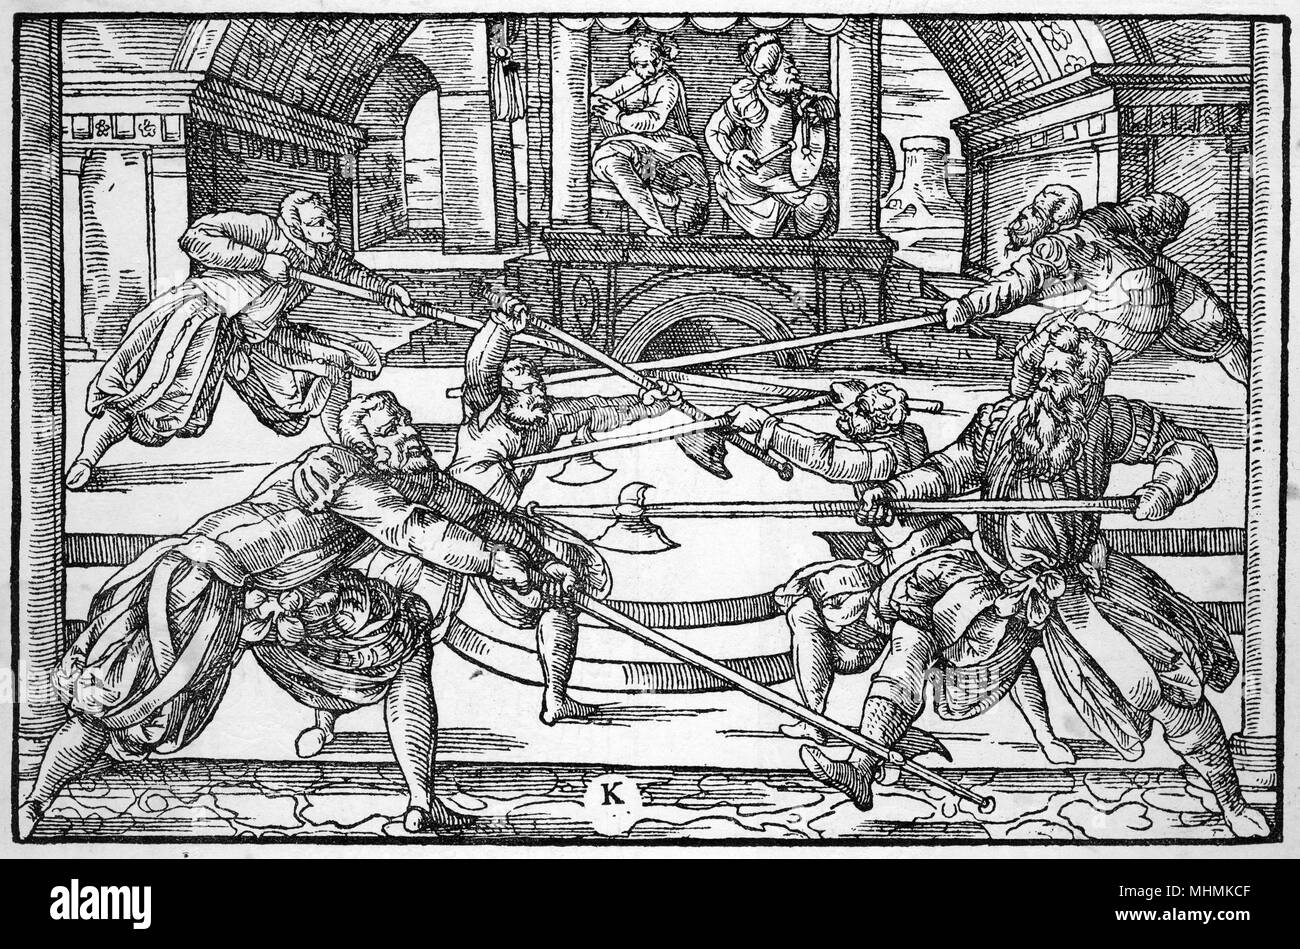 Tres pares de esgrimidores lucha con lucios, músicos como jugar en el fondo. Fecha: 1570 Foto de stock